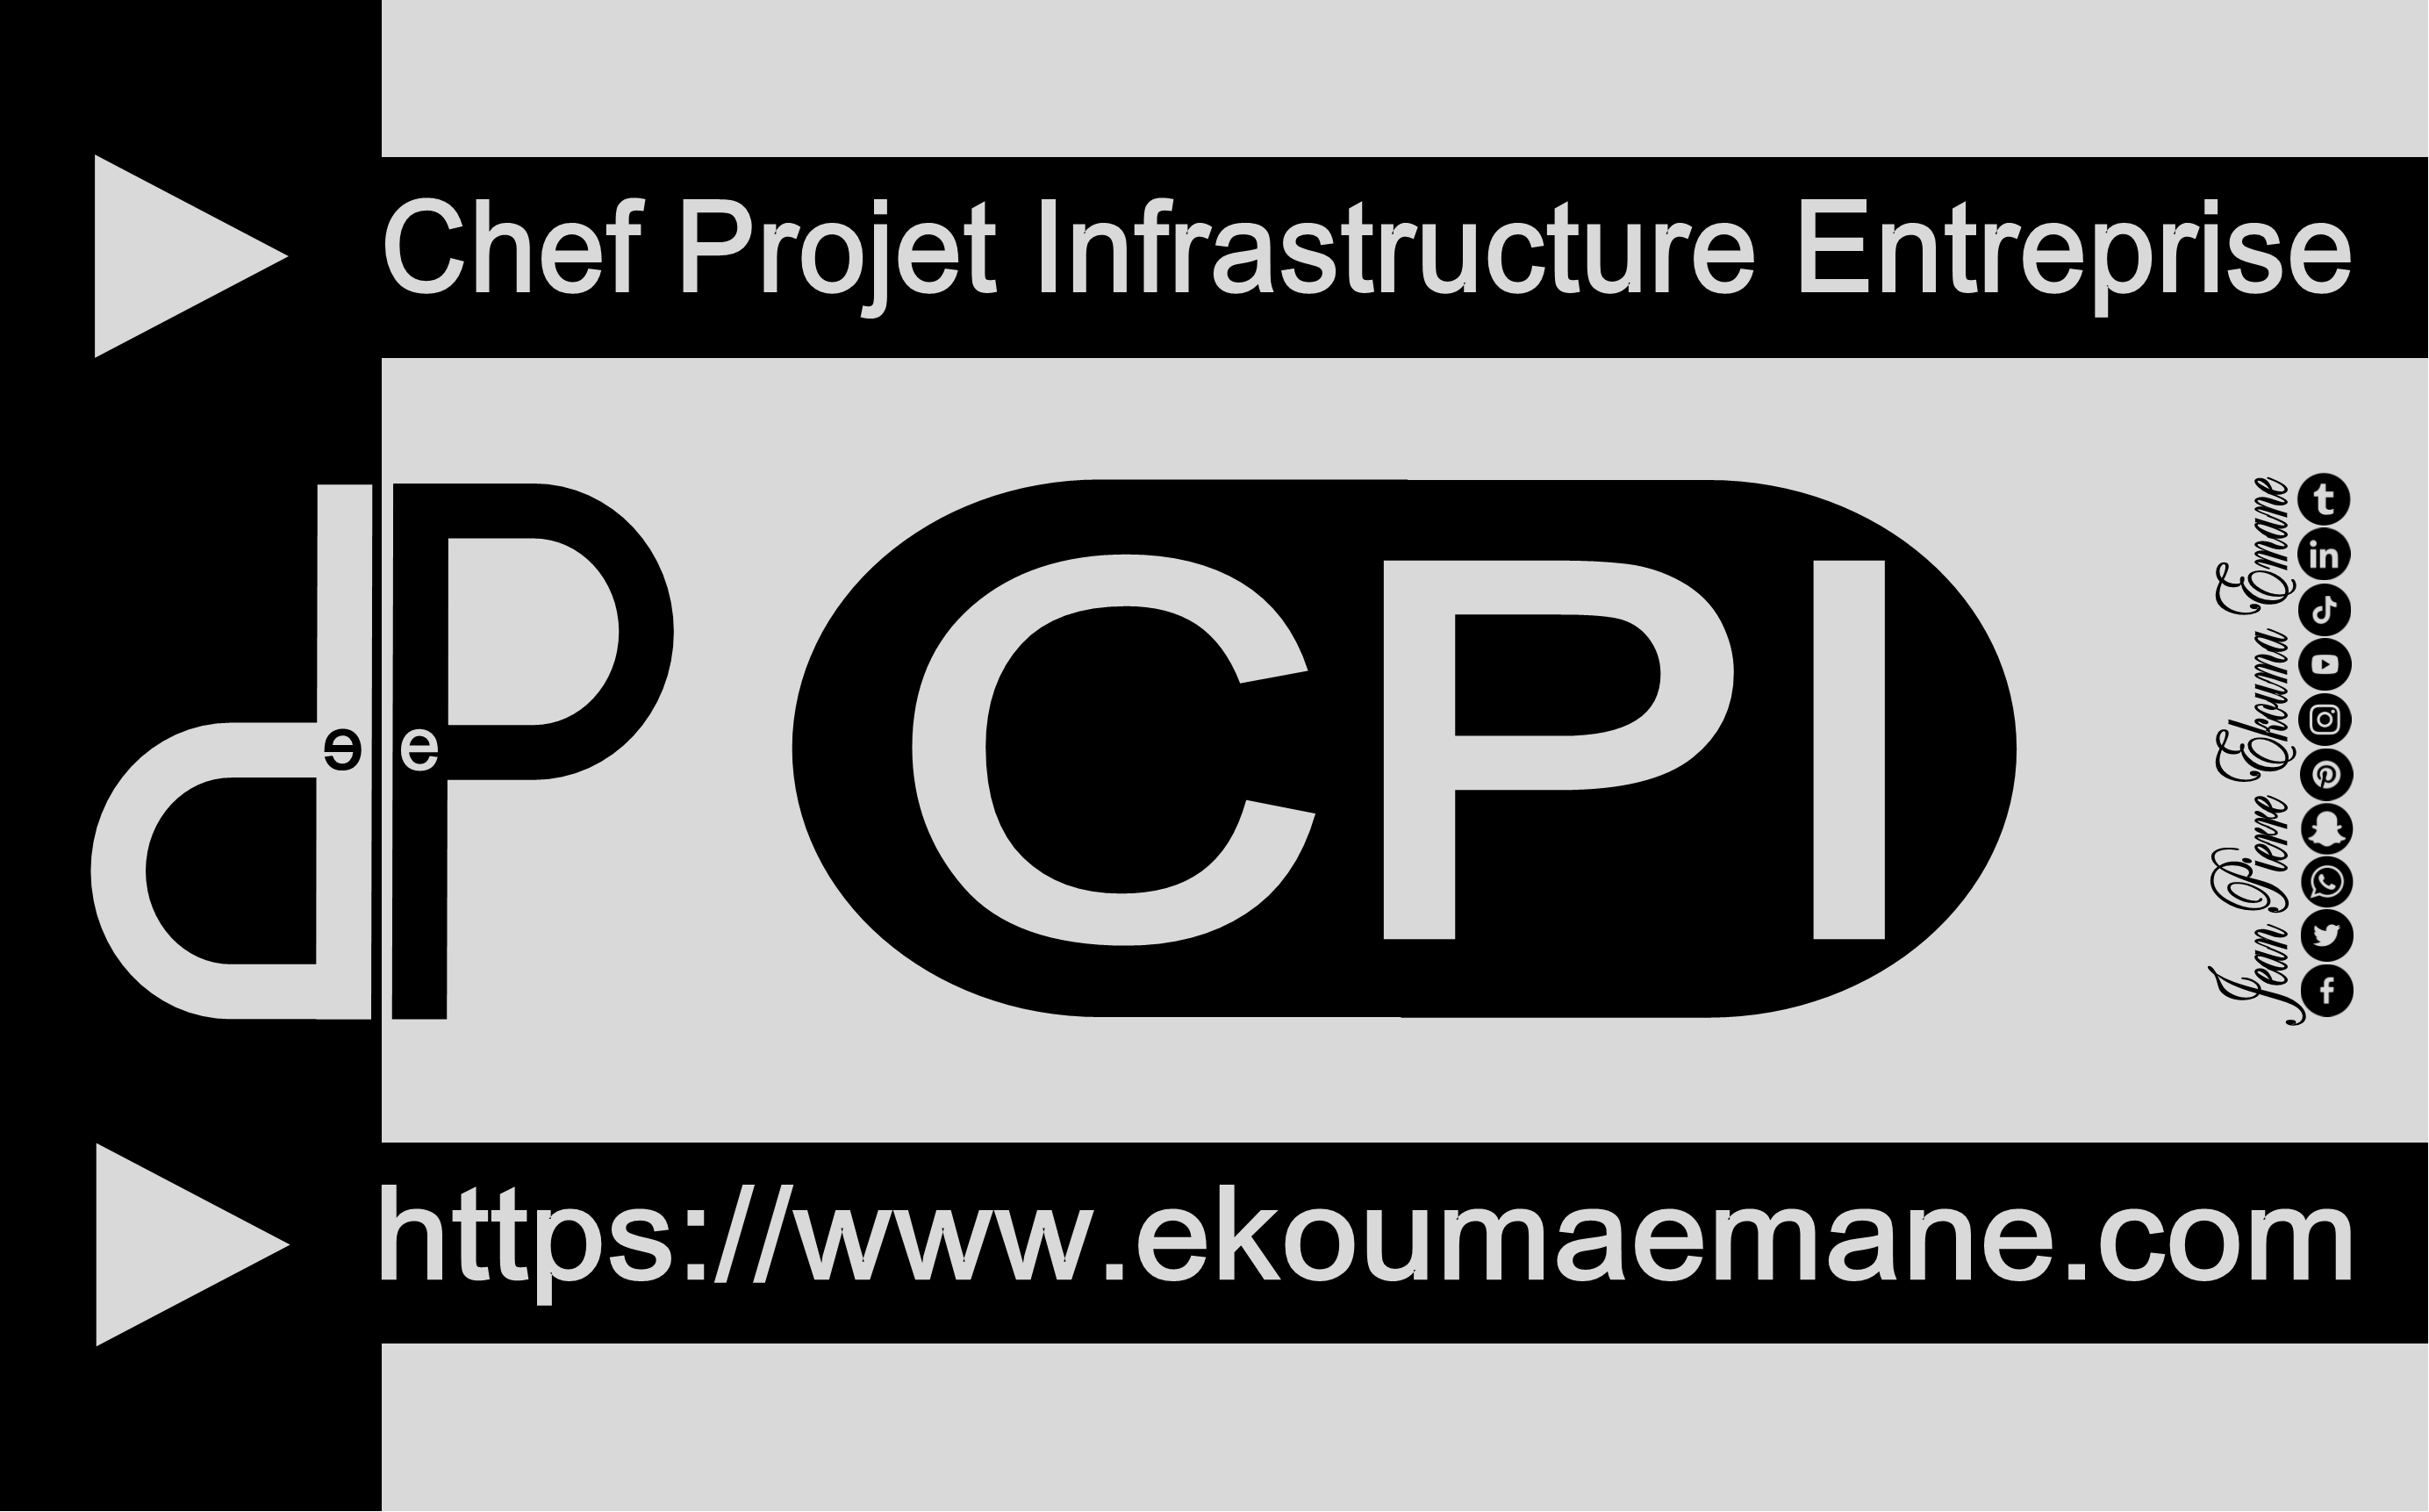 Chef de Projet Infrastructure | Atteindre les objectifs du projet